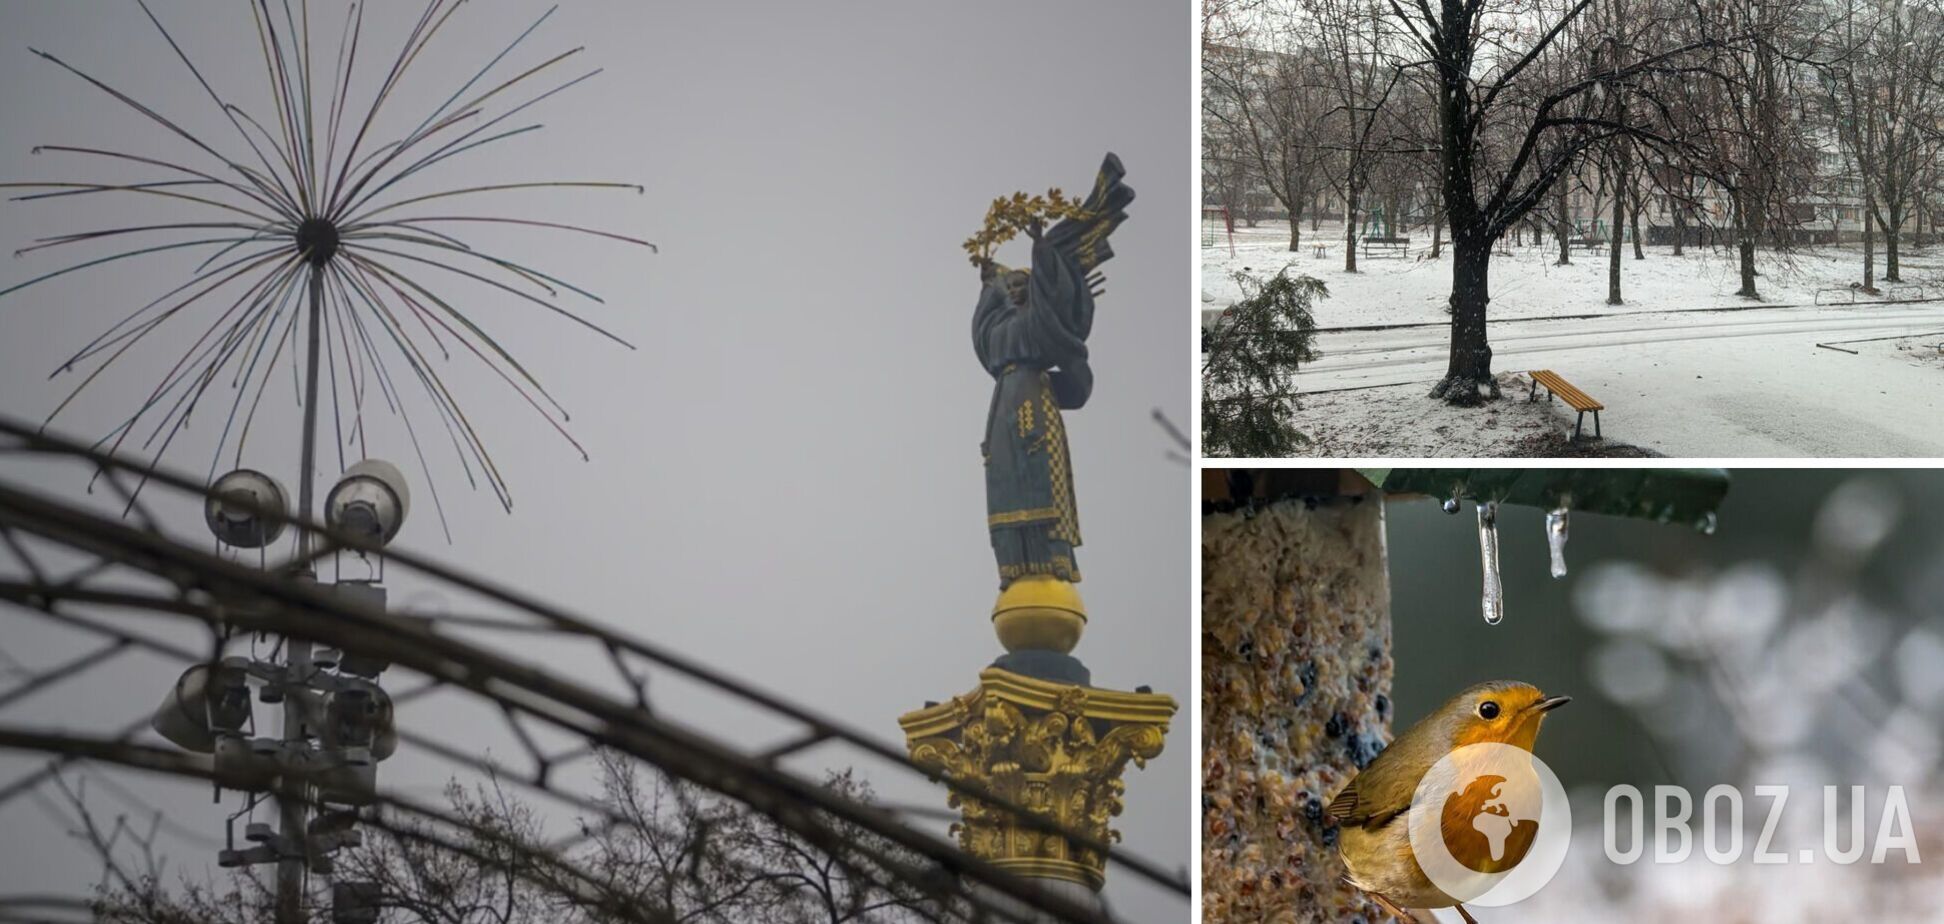 Дожди, мокрый снег и не только: украинцев предупредили о плохой погоде 11 февраля, объявлен І уровень опасности